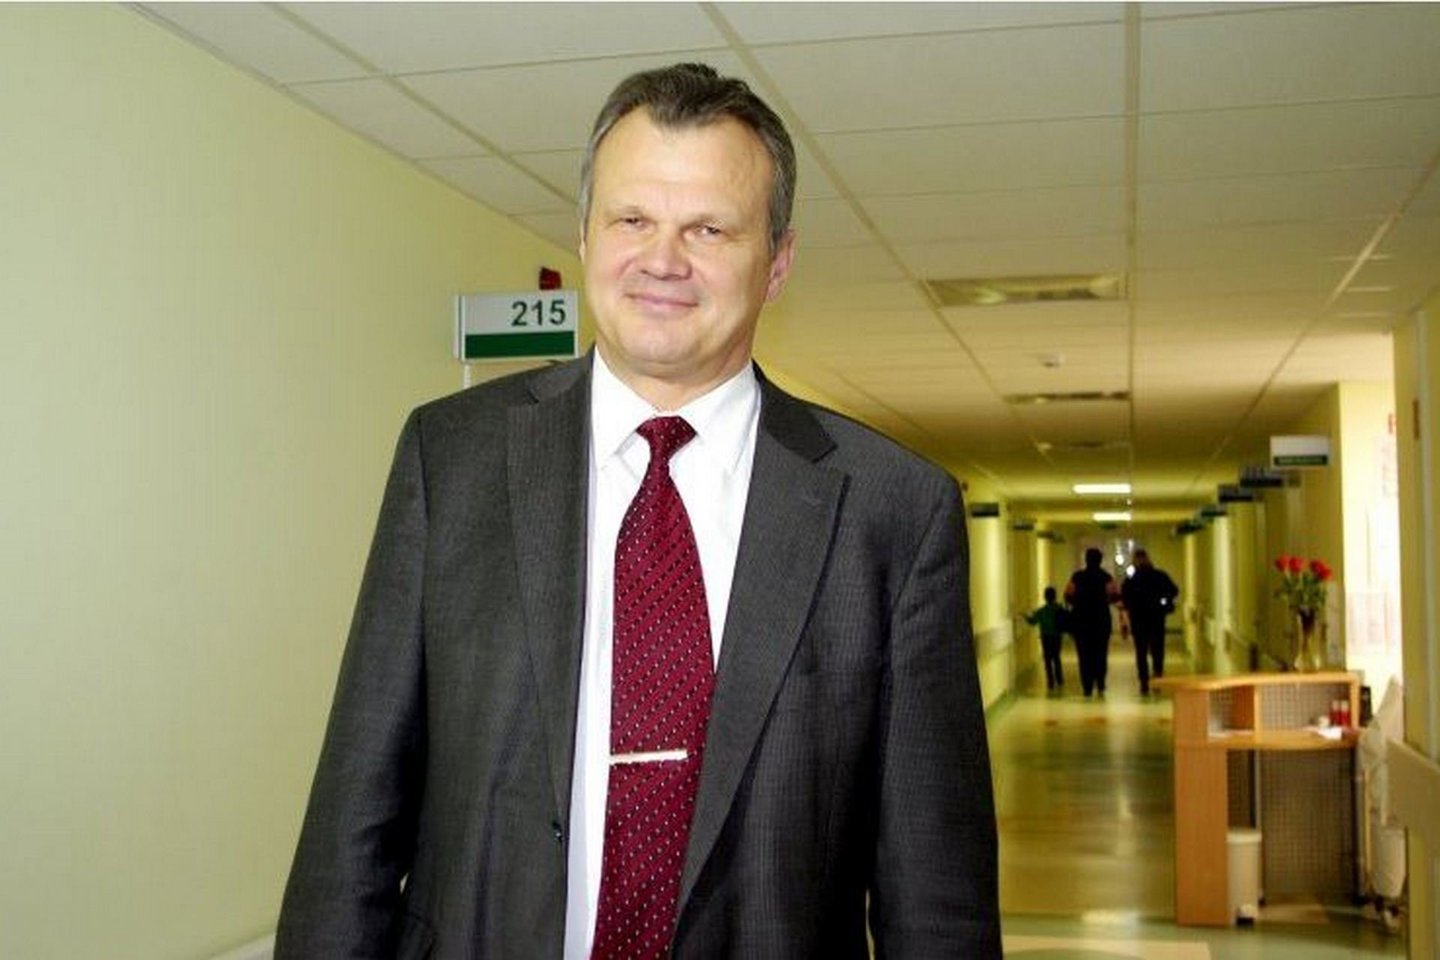 Pasvalio ligoninės vyriausiasis gydytojas Rolandas Rastauskas apie velionį kolegą atsiliepė itin teigiamai<br>Panskliautas.lt nuotr.